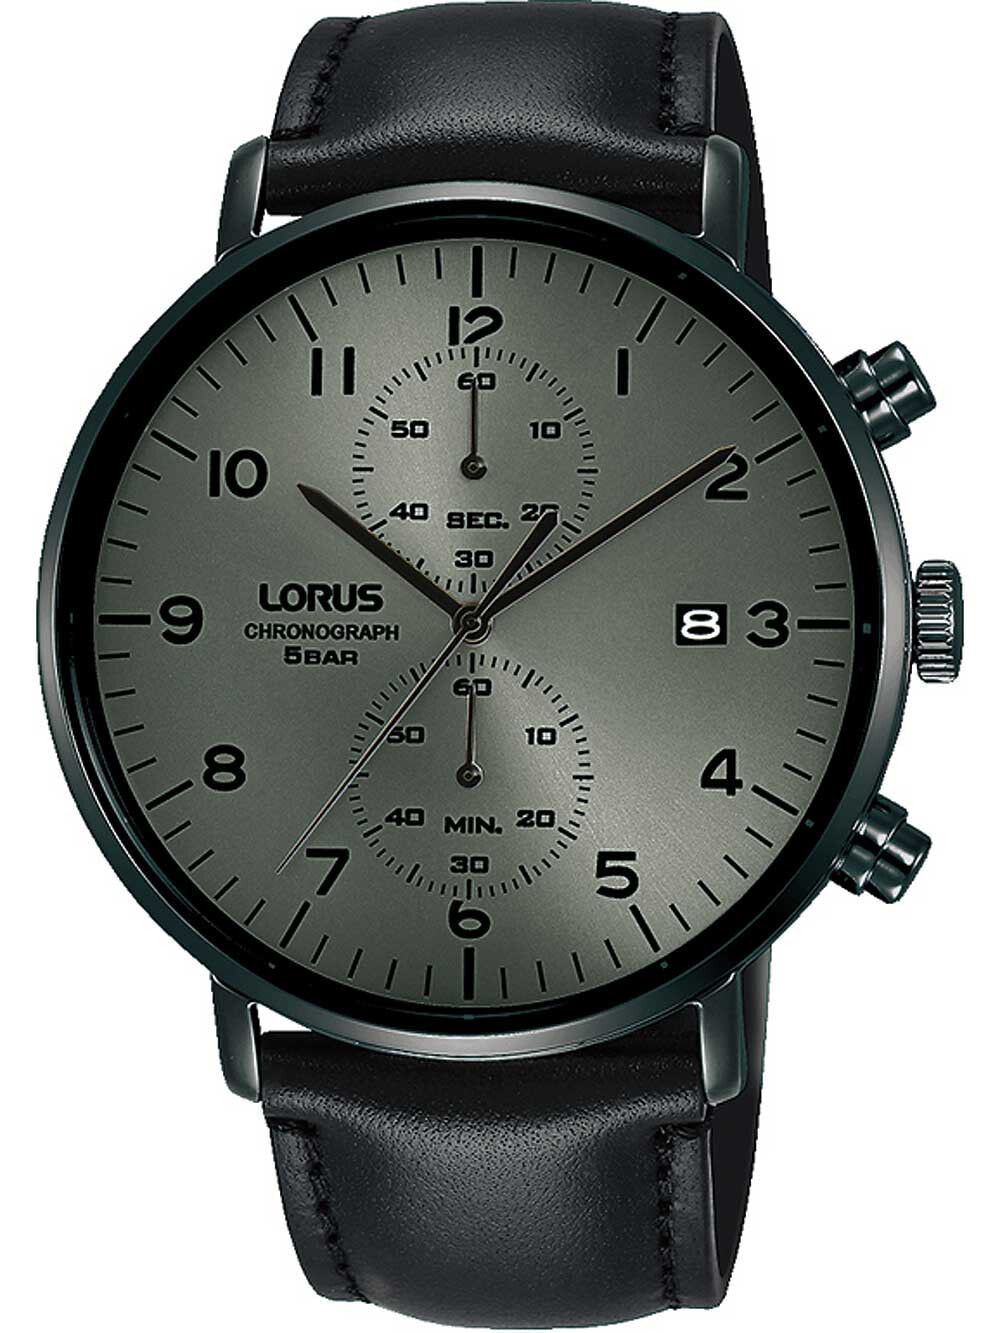 Мужские наручные часы с черным кожаным ремешком  Lorus RW405AX9 chronograph 43mm 5ATM